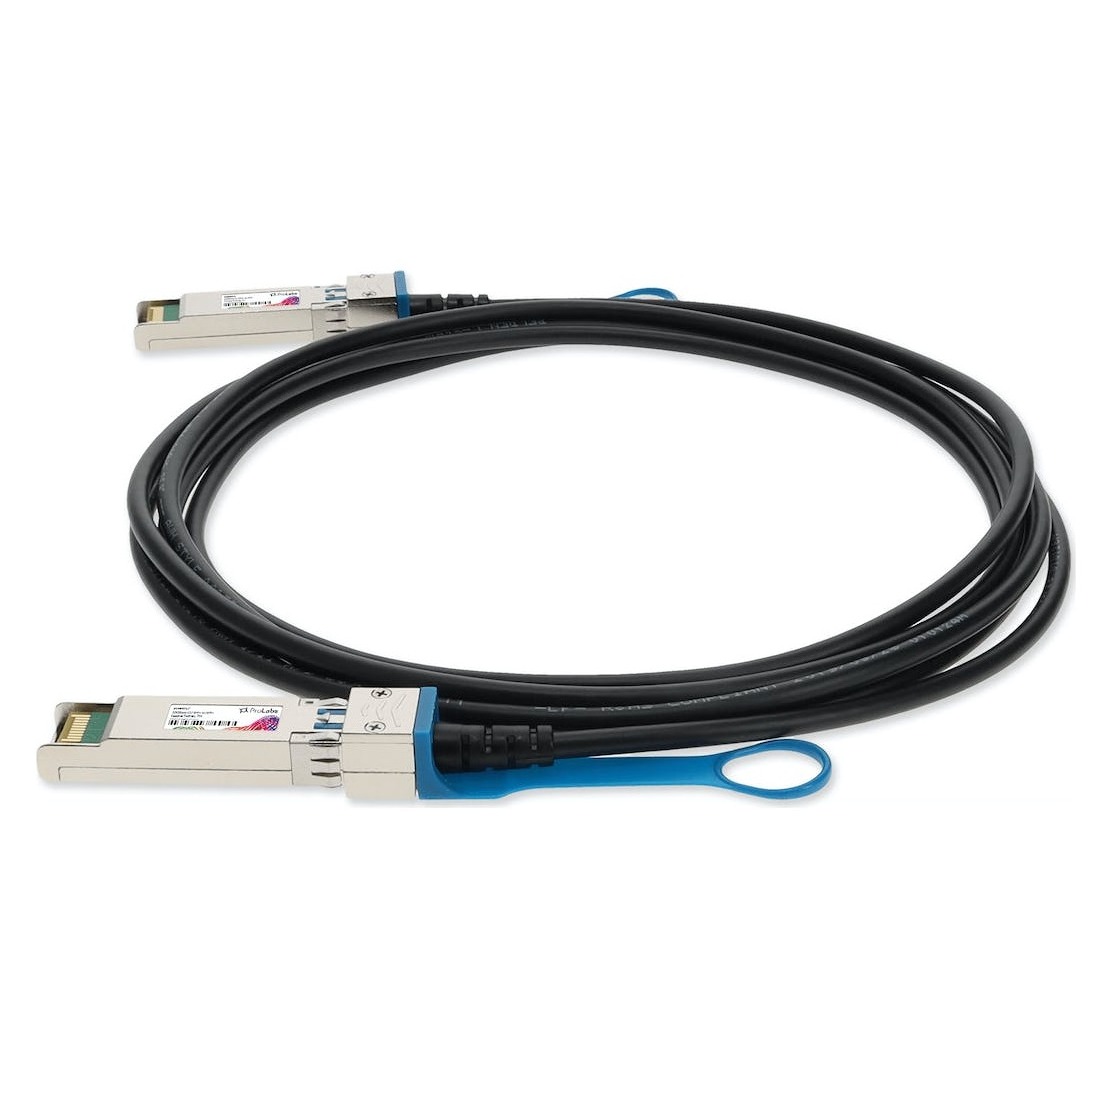 Aruba 10G SFP+ to SFP+ 7m Direct Attach Copper Cable